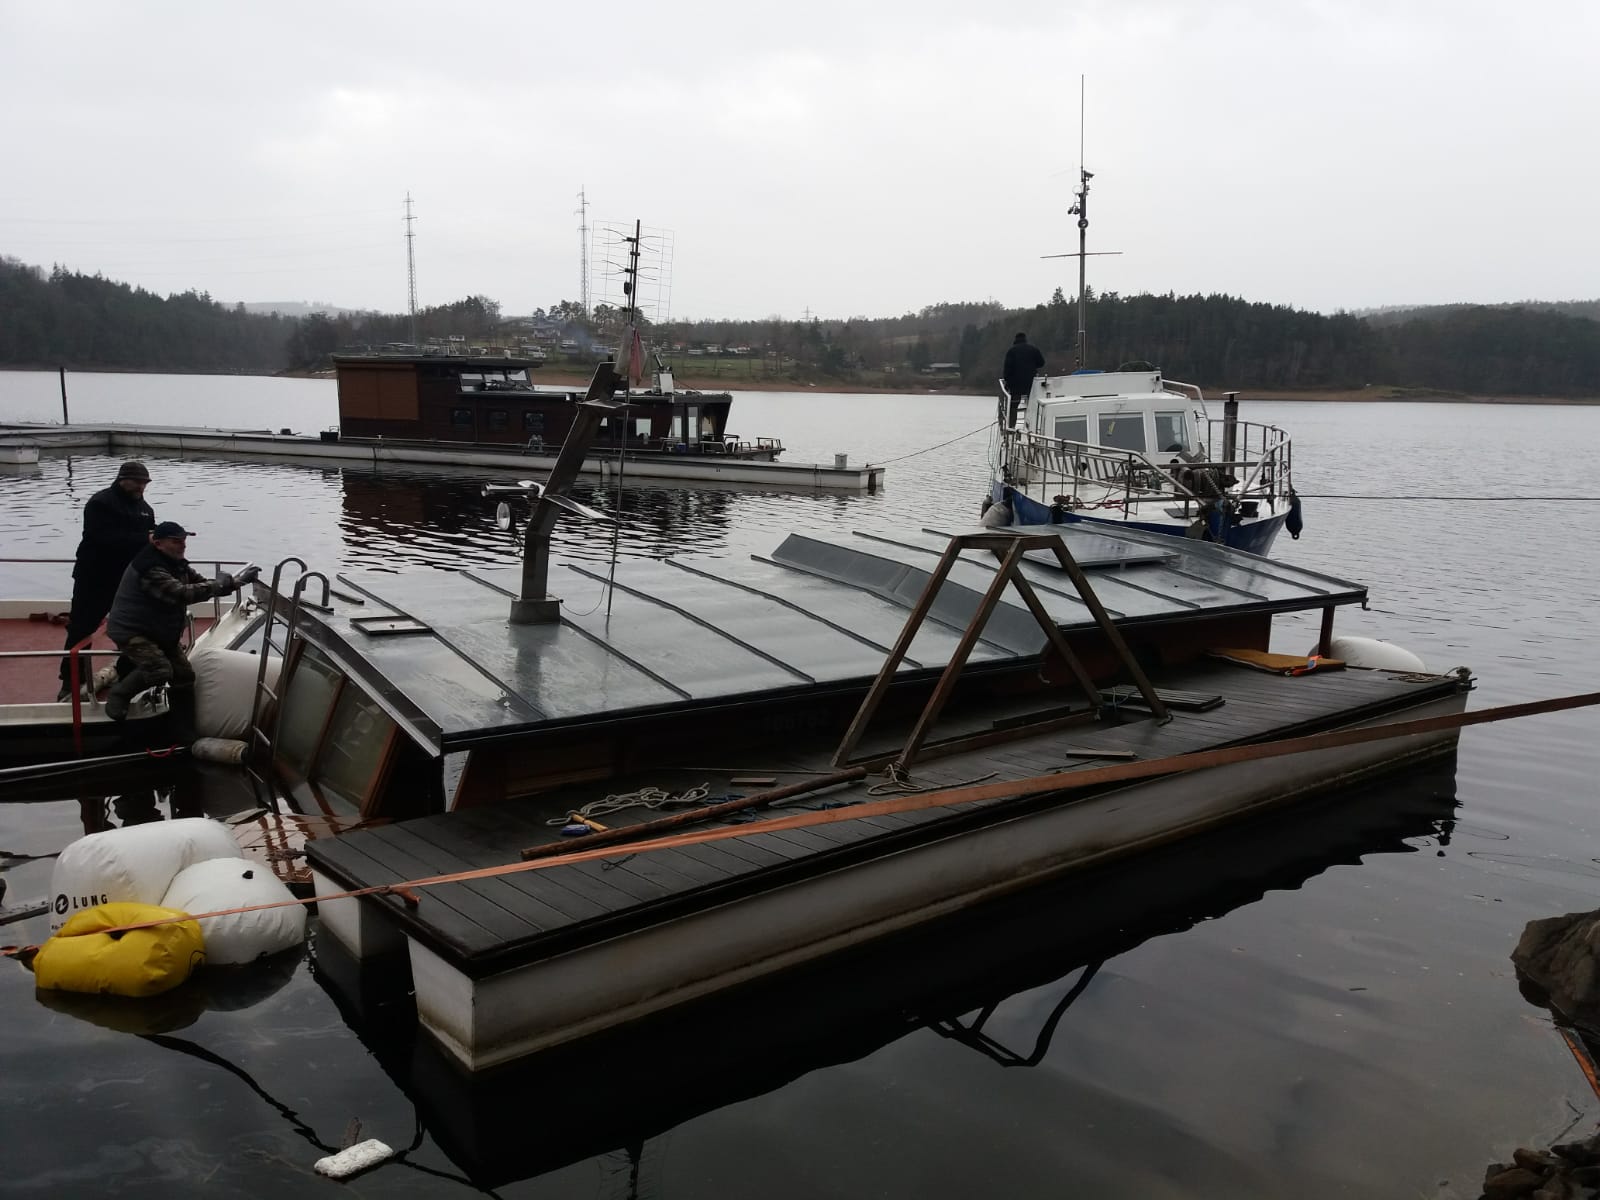 Vyzvednutí potopeného houseboatu, Radava - 5. a 6. 1. 2019 (6).jpg